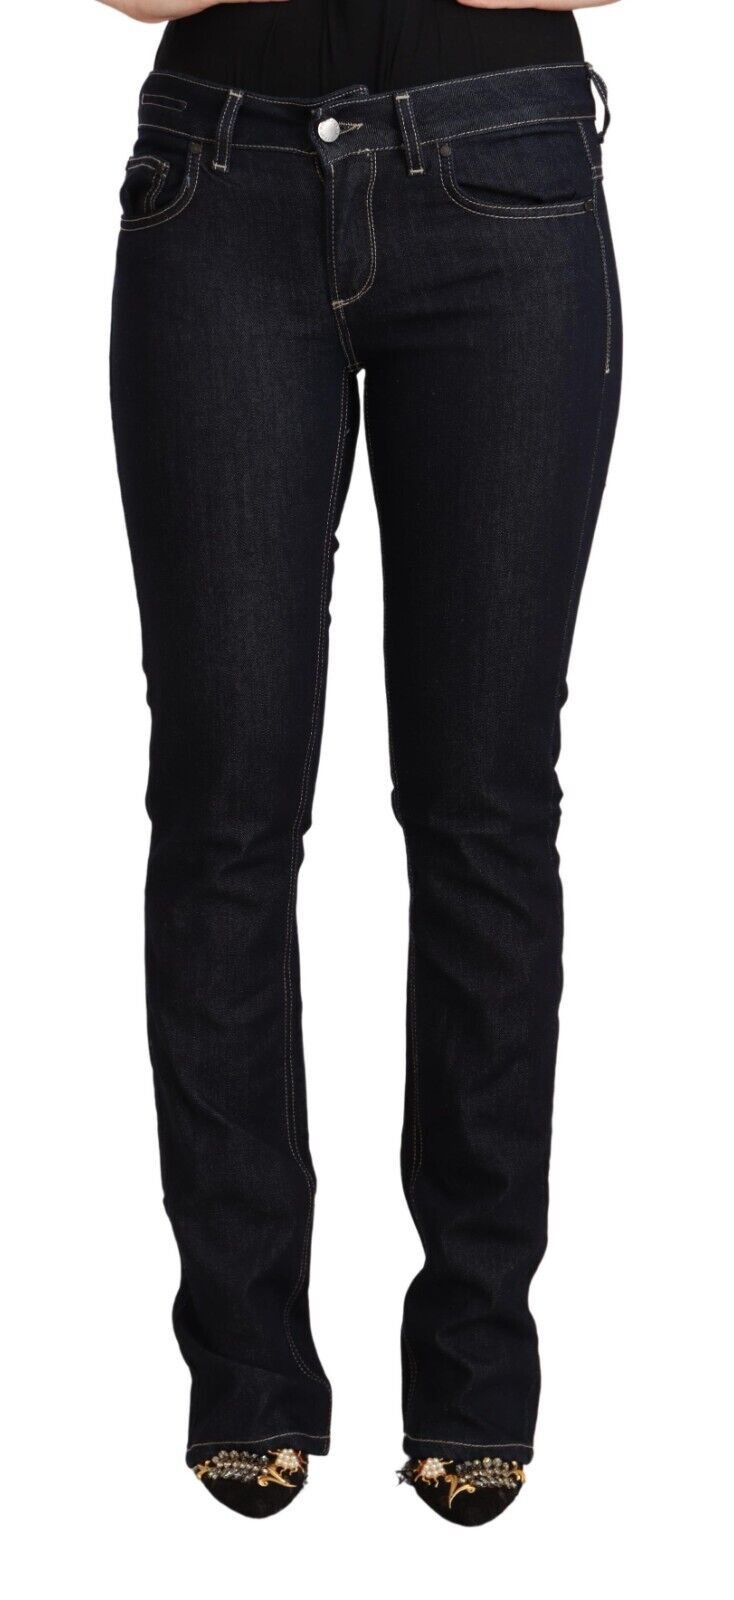 GF Ferre Chic Low Waist Skinny Jeans in Timeless Women's Black